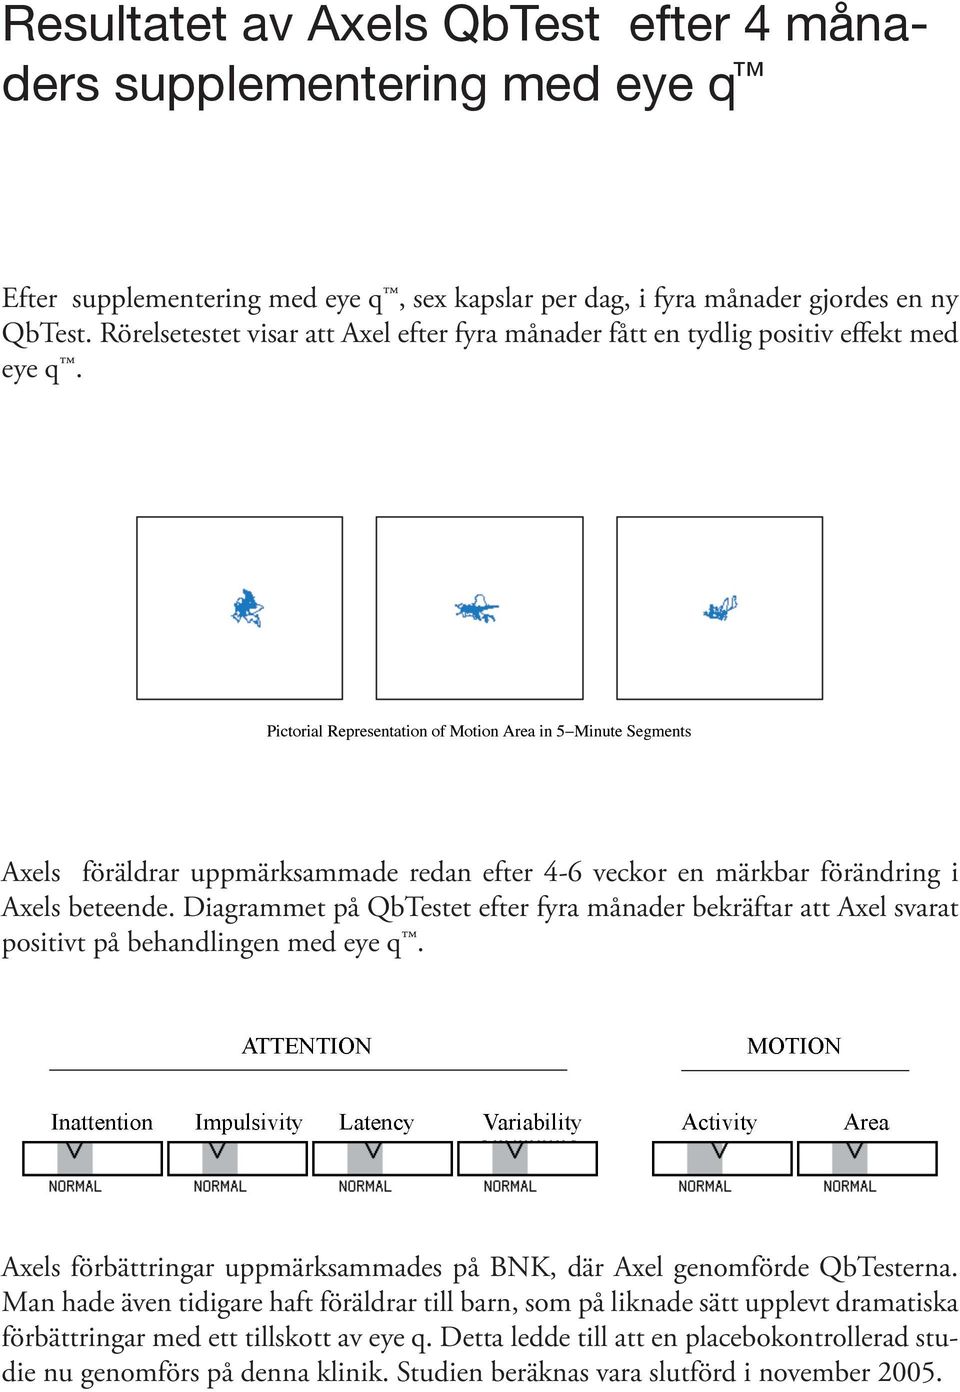 Diagrammet på QbTestet efter fyra månader bekräftar att Axel svarat positivt på behandlingen med eye q. Axels förbättringar uppmärksammades på BNK, där Axel genomförde QbTesterna.